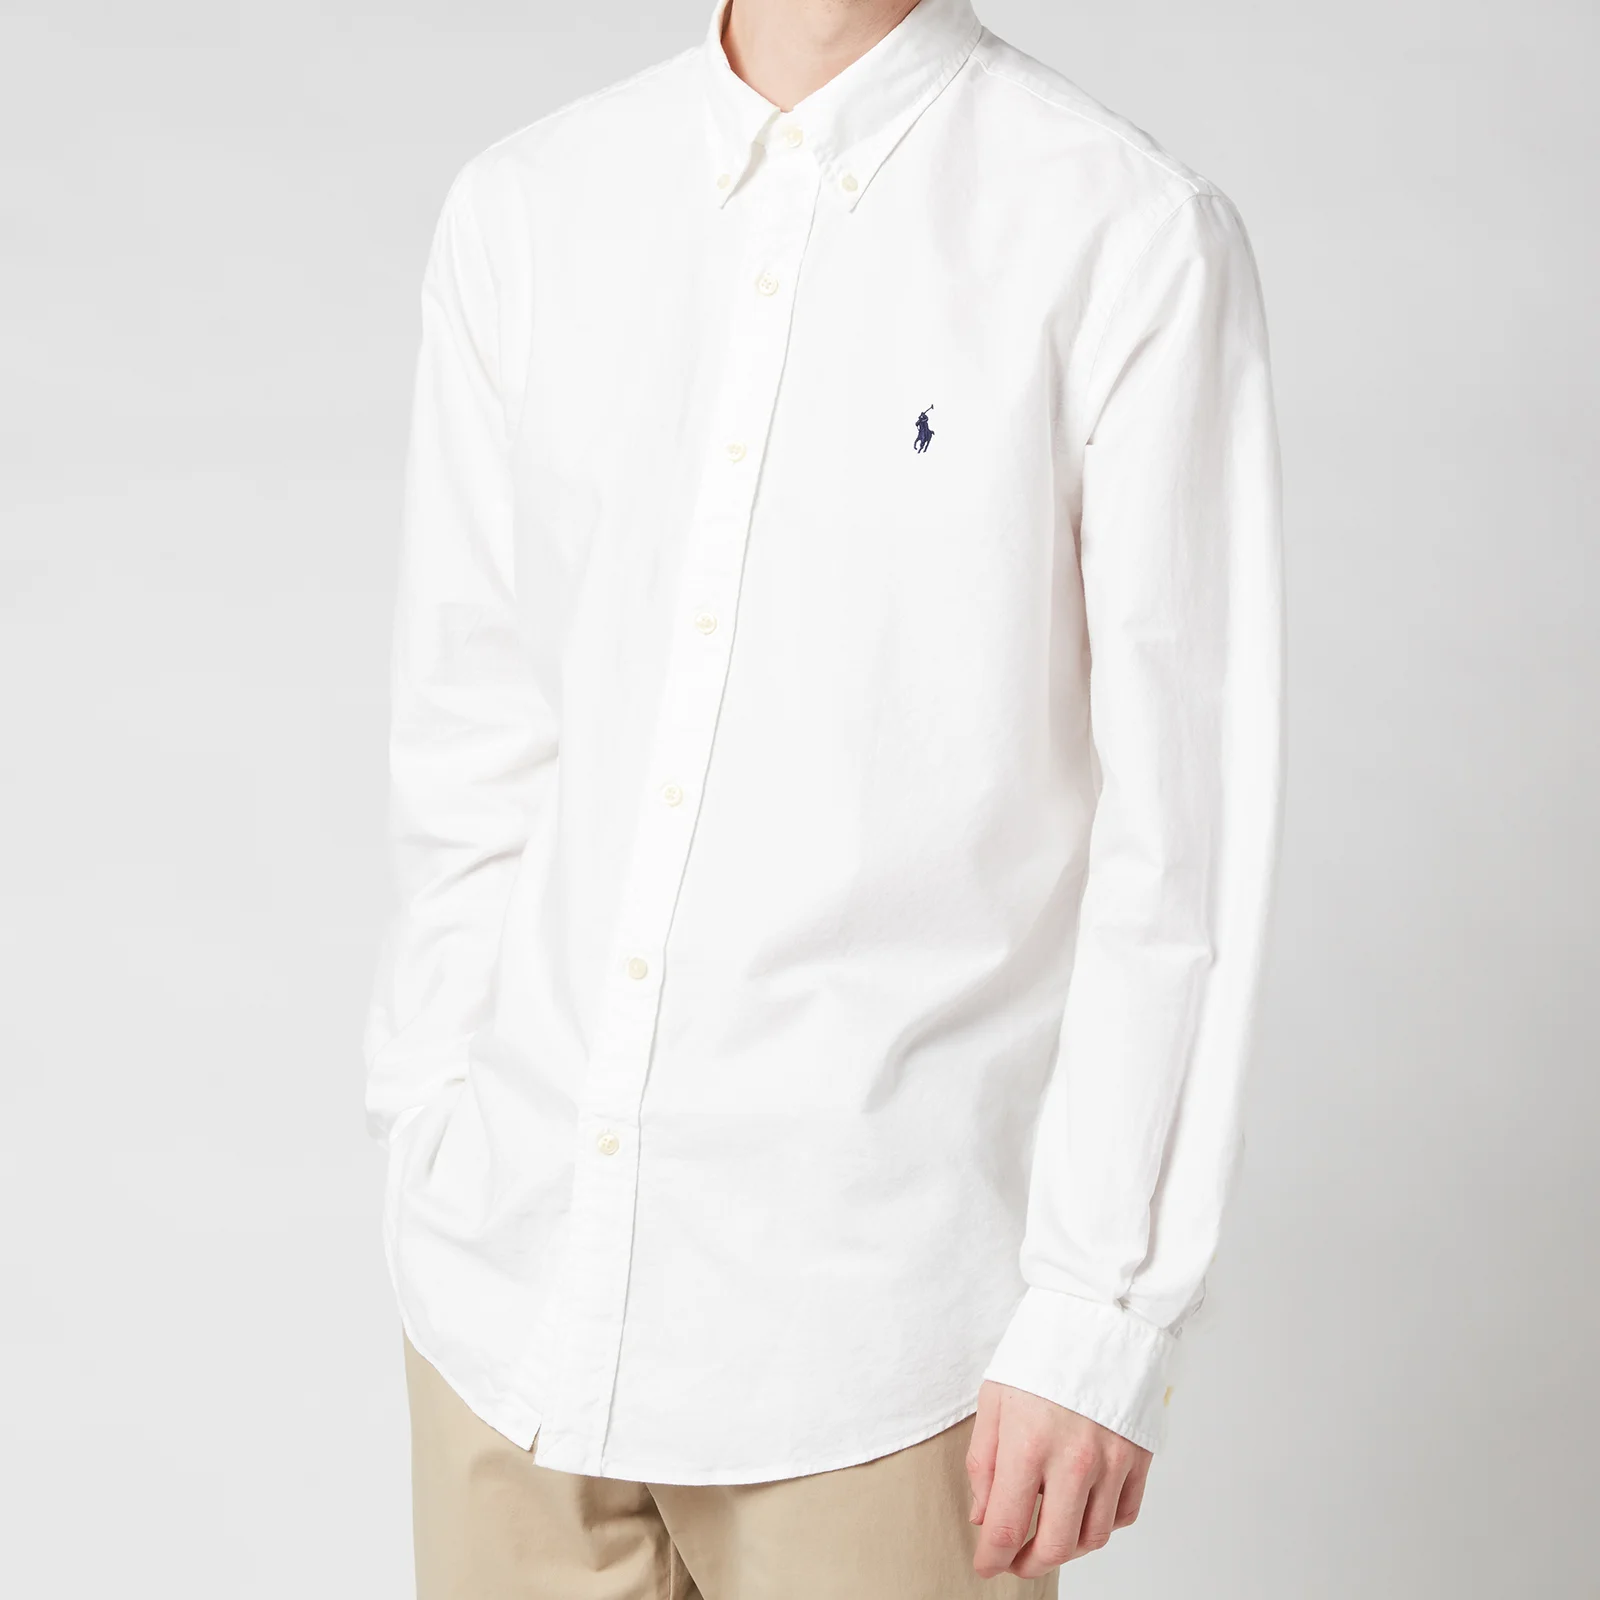 Polo Ralph Lauren Men's Custom Fit Oxford Long Sleeved Shirt - White Image 1